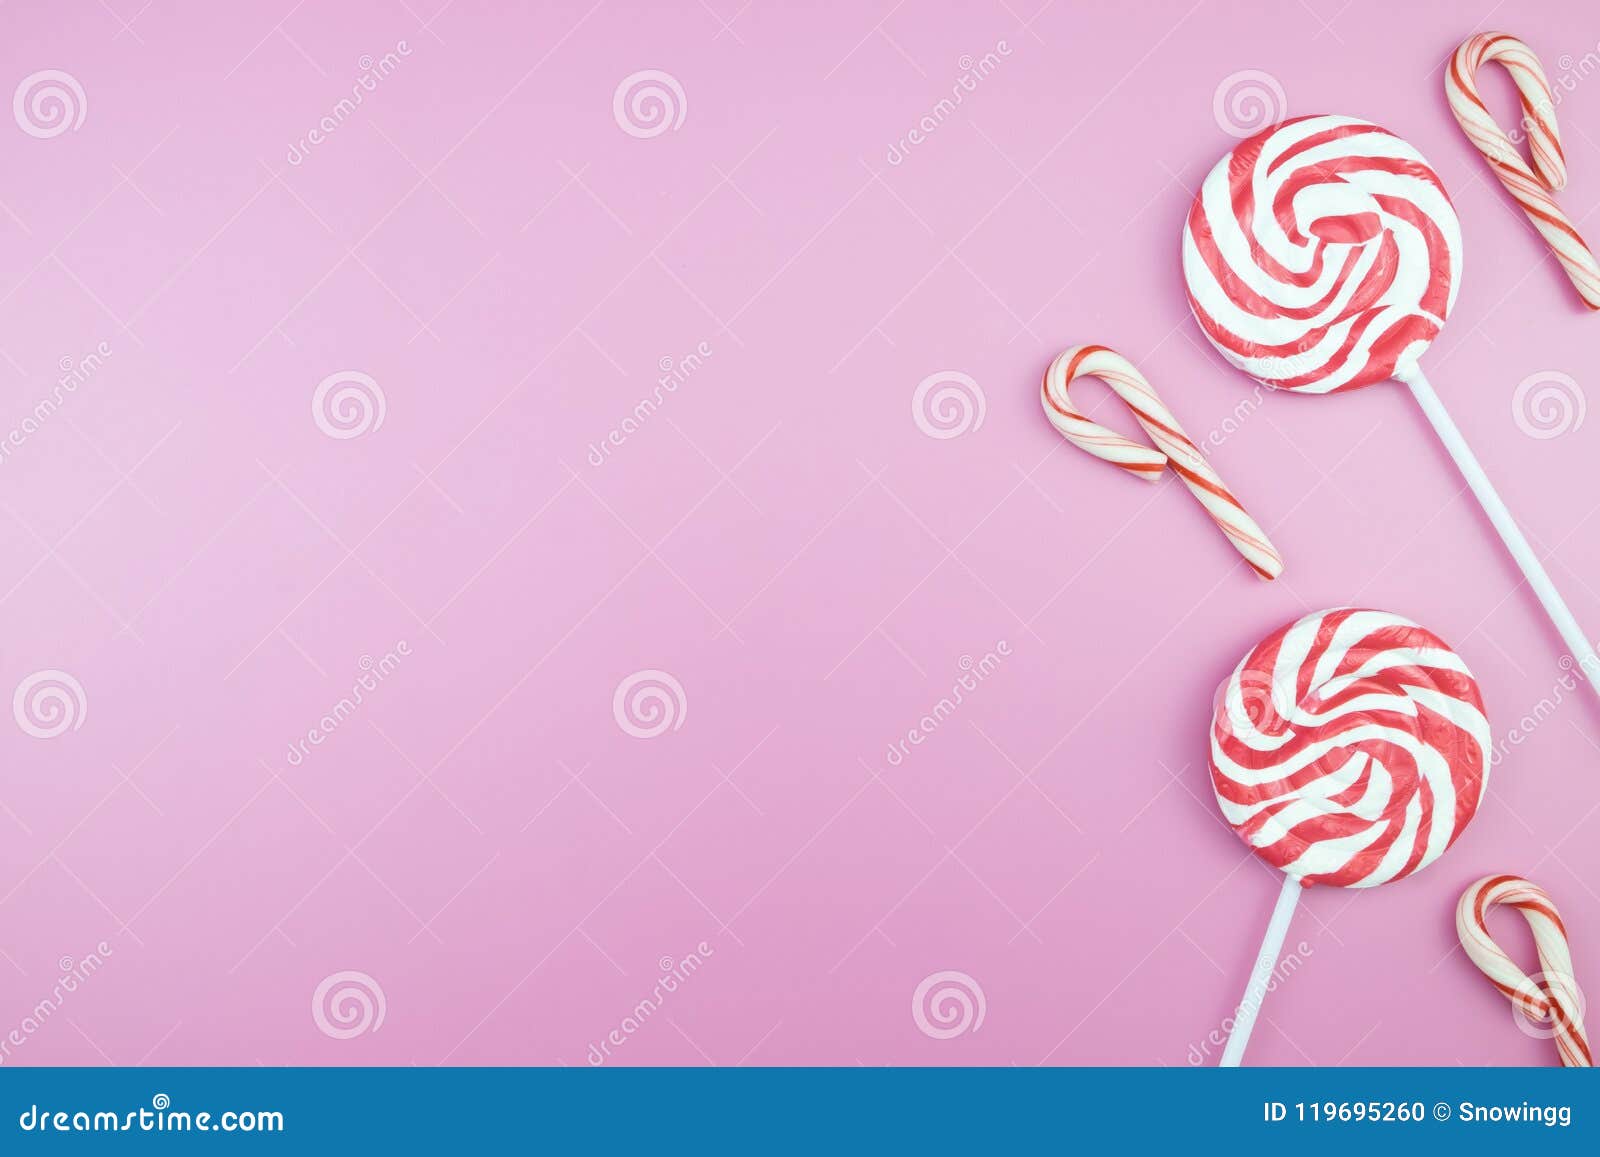 Розовые карамельки. Розовый фон с конфетами. Розовый фон с леденцами. Розовый фон с карамелью. Фон для презентации сладости.